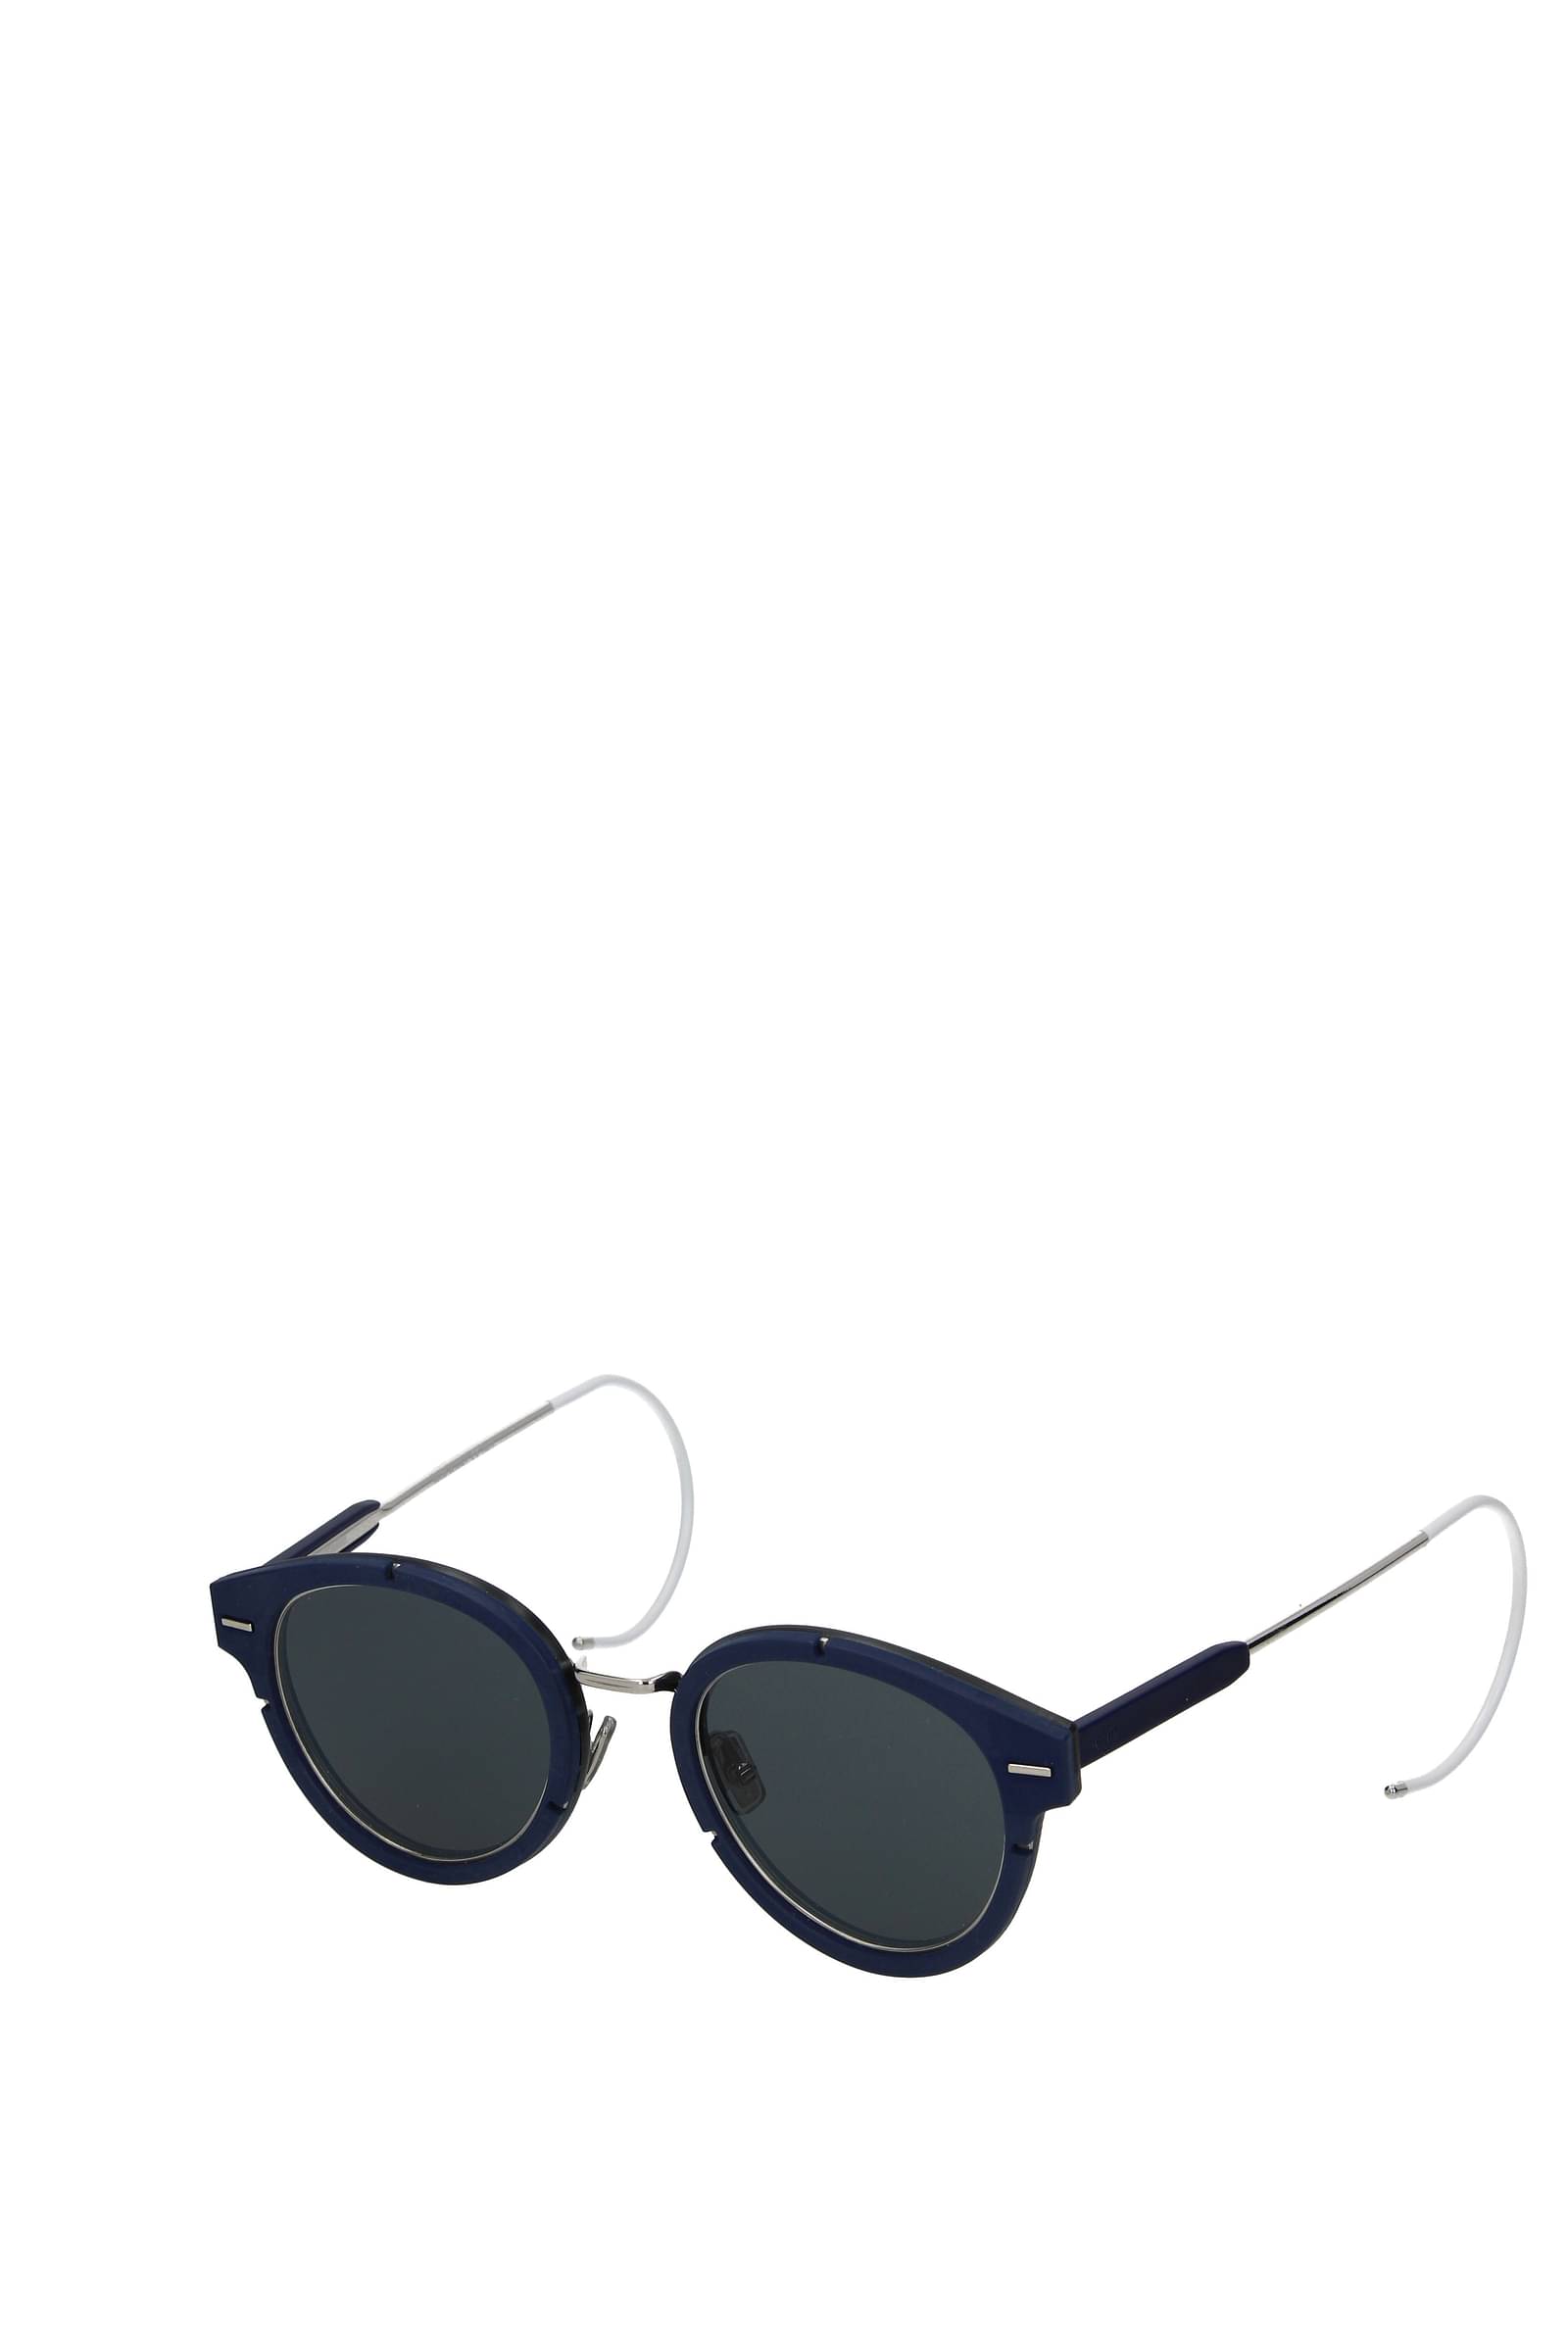 DIOR DiorBlackSuit SI 55 Smoke  Black Sunglasses  Sunglass Hut Australia